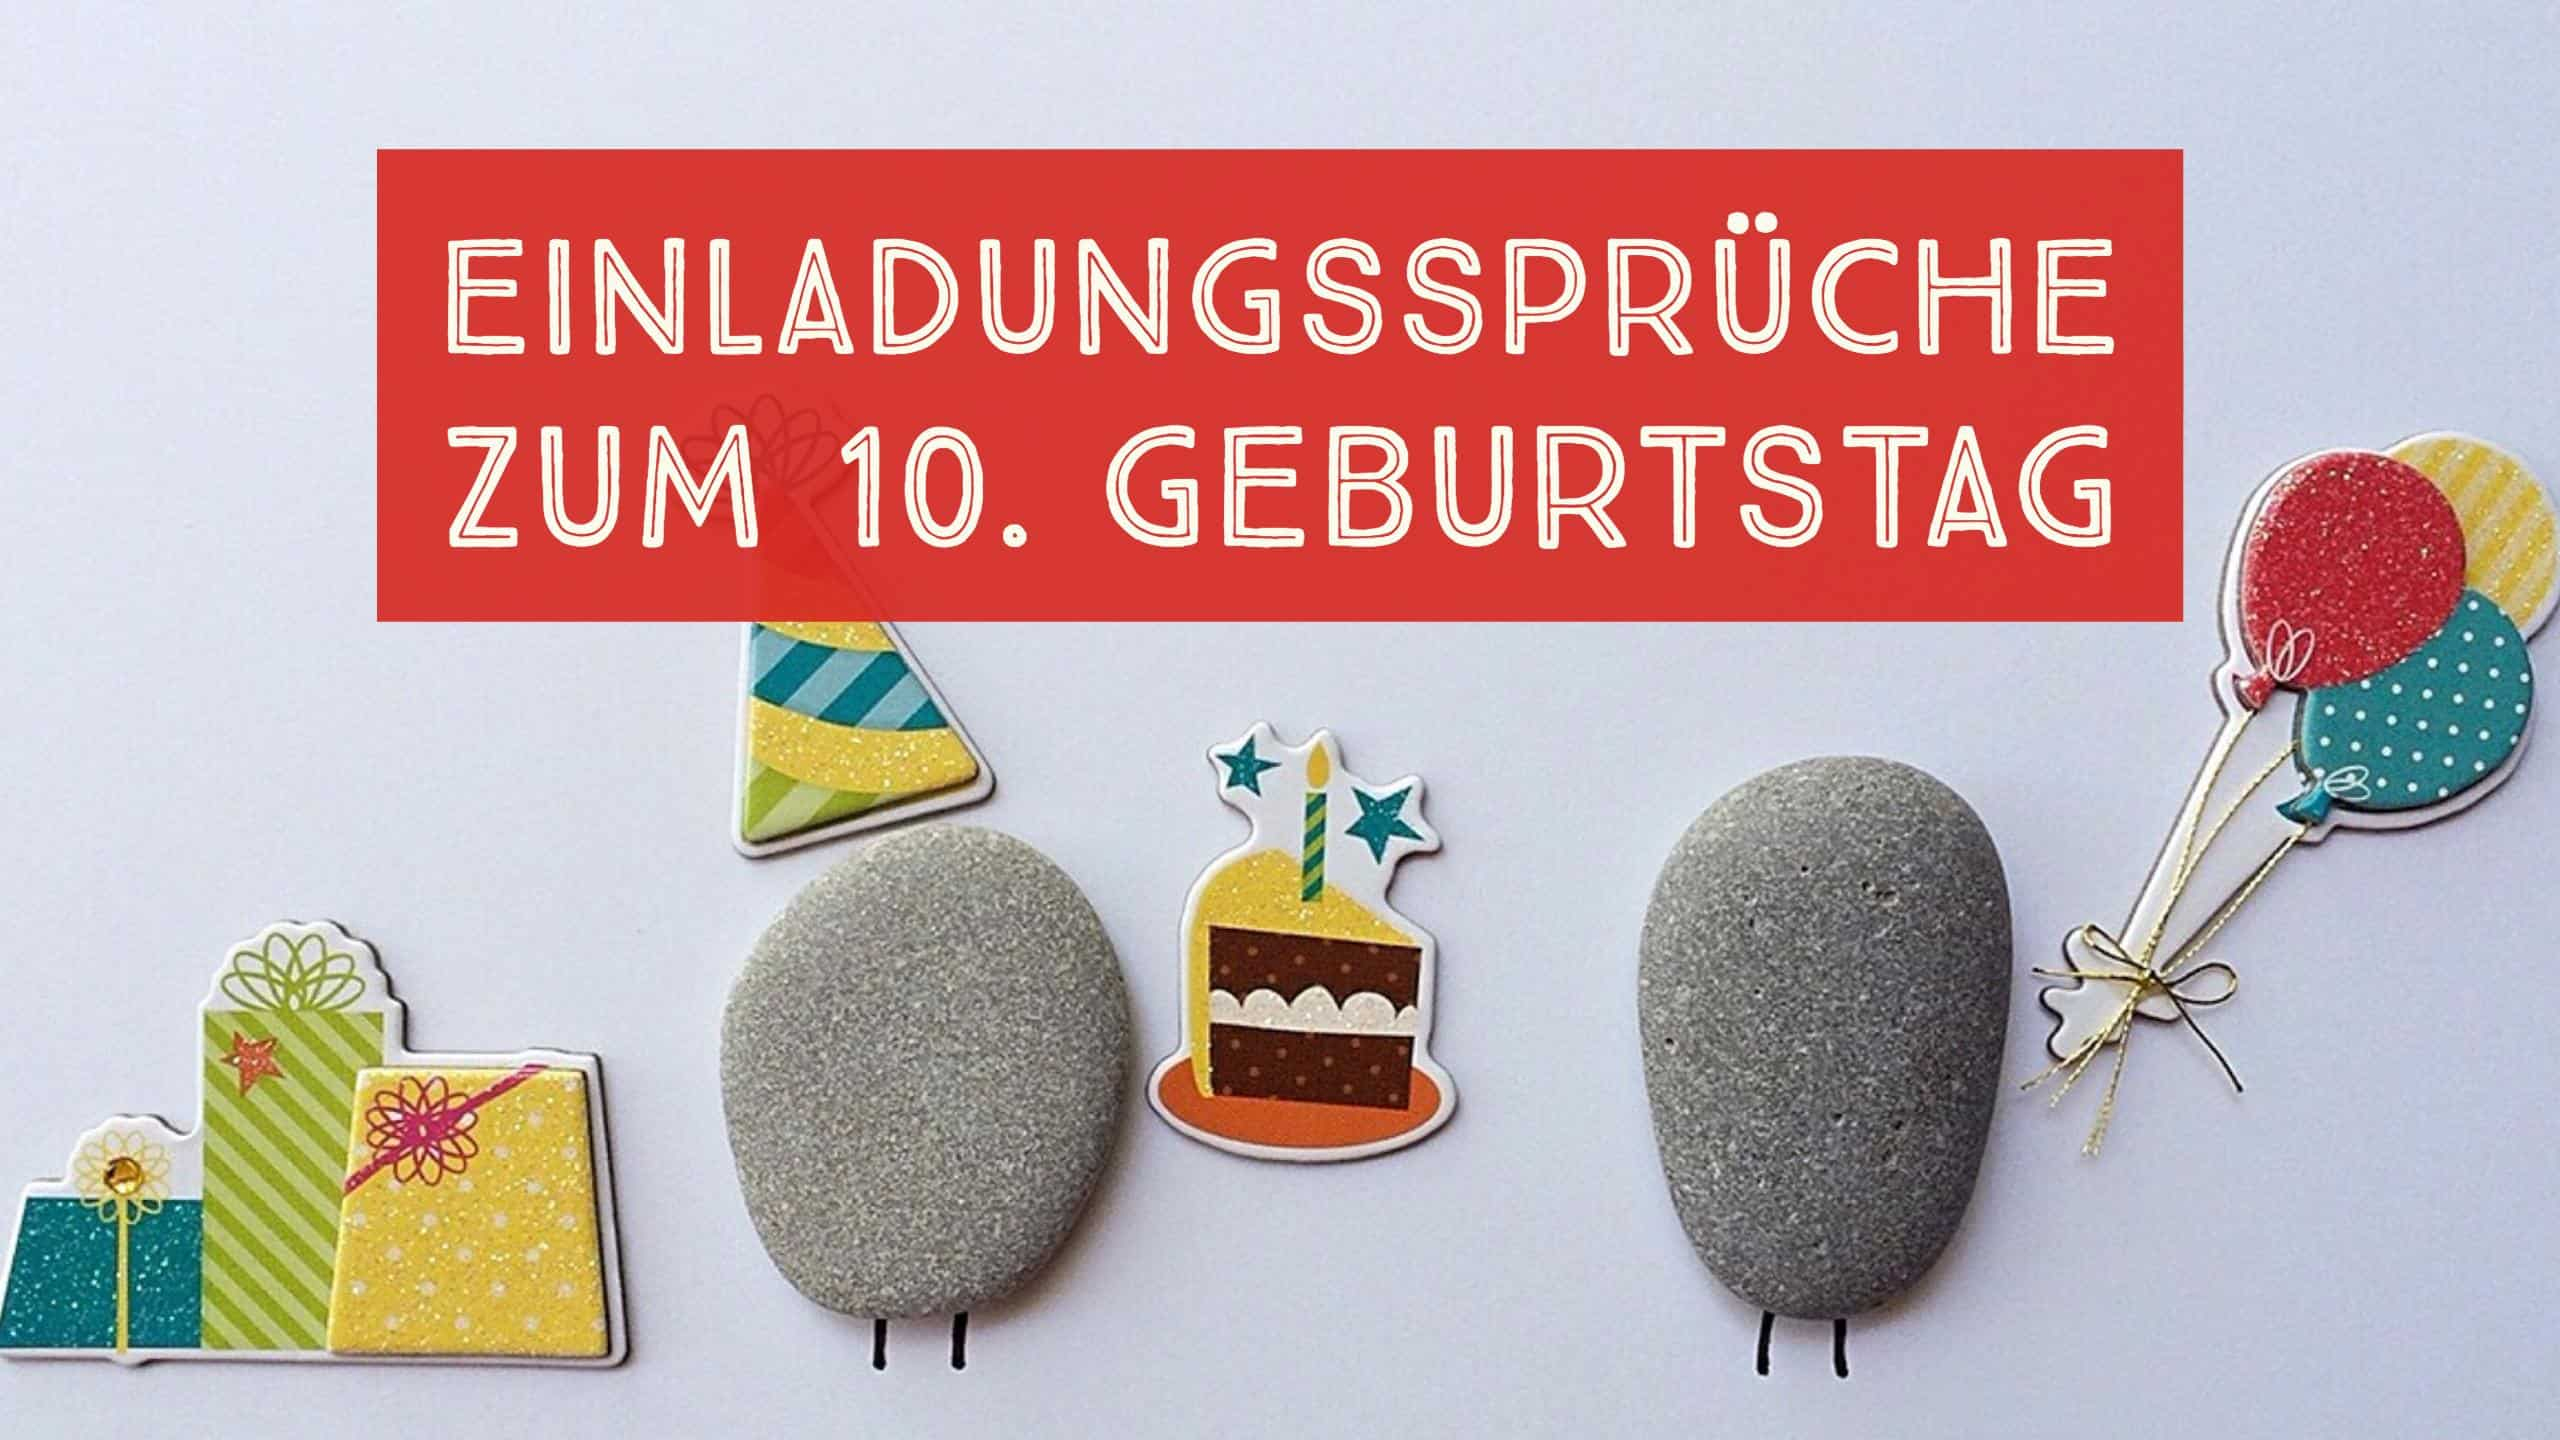 Einladungssprüche Zum 10. Geburtstag  Einladungskartenbday.de verwandt mit Glückwünsche Zum 10 Geburtstag